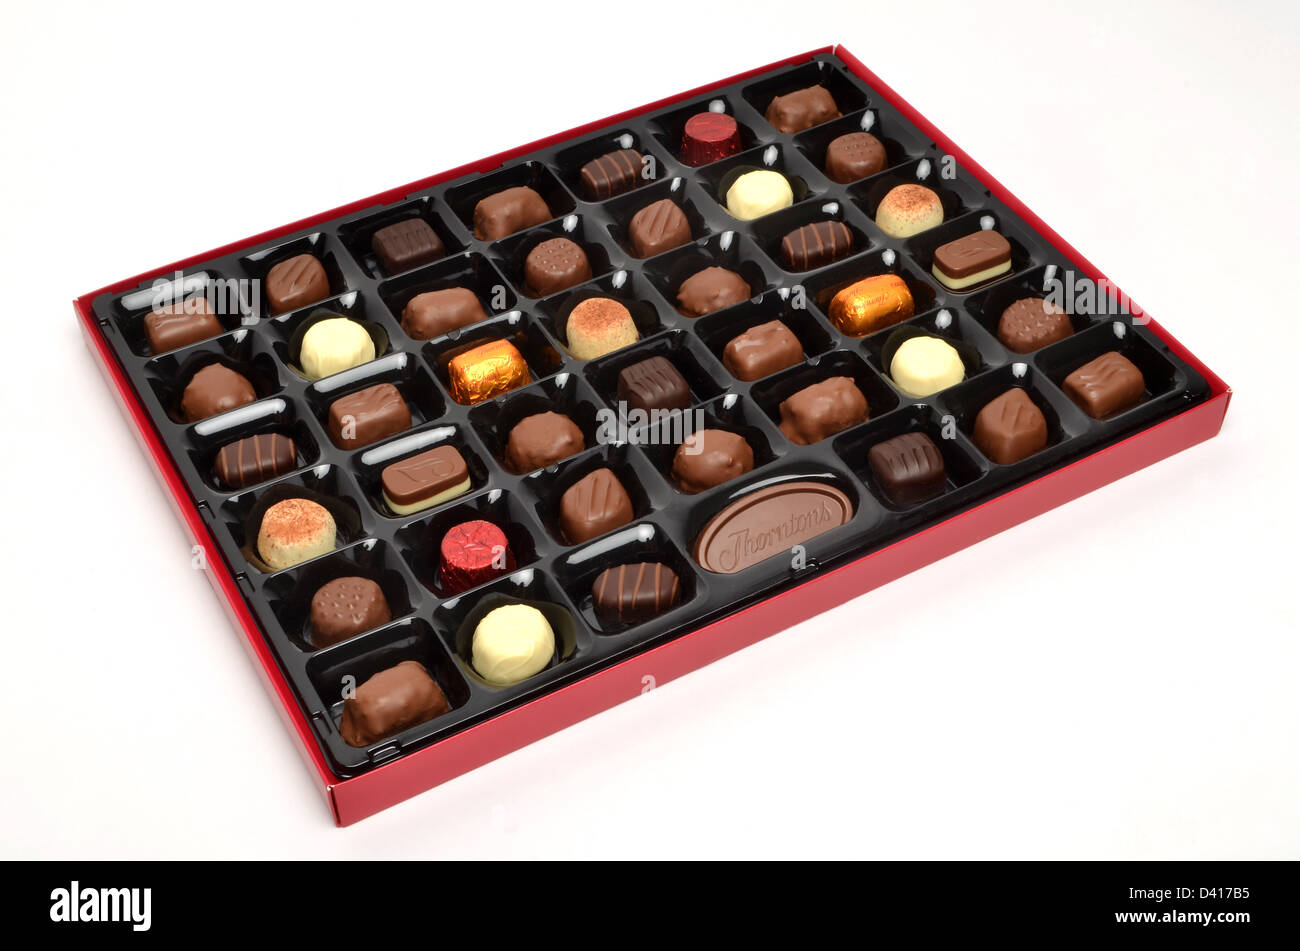 Boîte de chocolats - Thorntons Classic Collection Banque D'Images